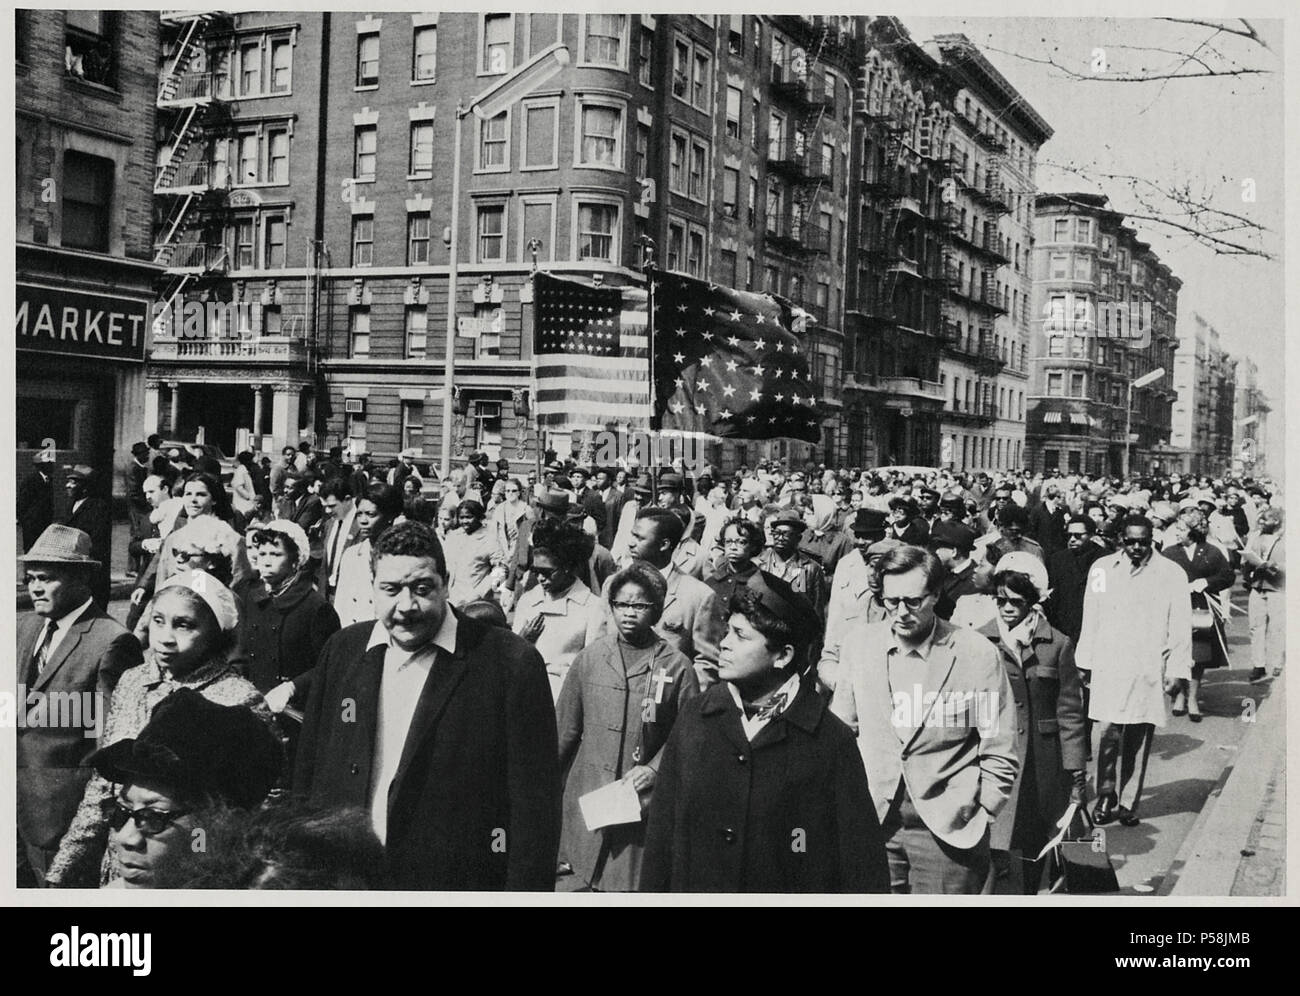 Foule de personnes en deuil, certaines portant des drapeaux, marchant vers le bas 7e Avenue, près de 112e Rue sur chemin de service commémoratif pour le Dr. Martin Luther King Jr. dans Central Park, New York City, New York, USA, le 7 avril 1968 Banque D'Images